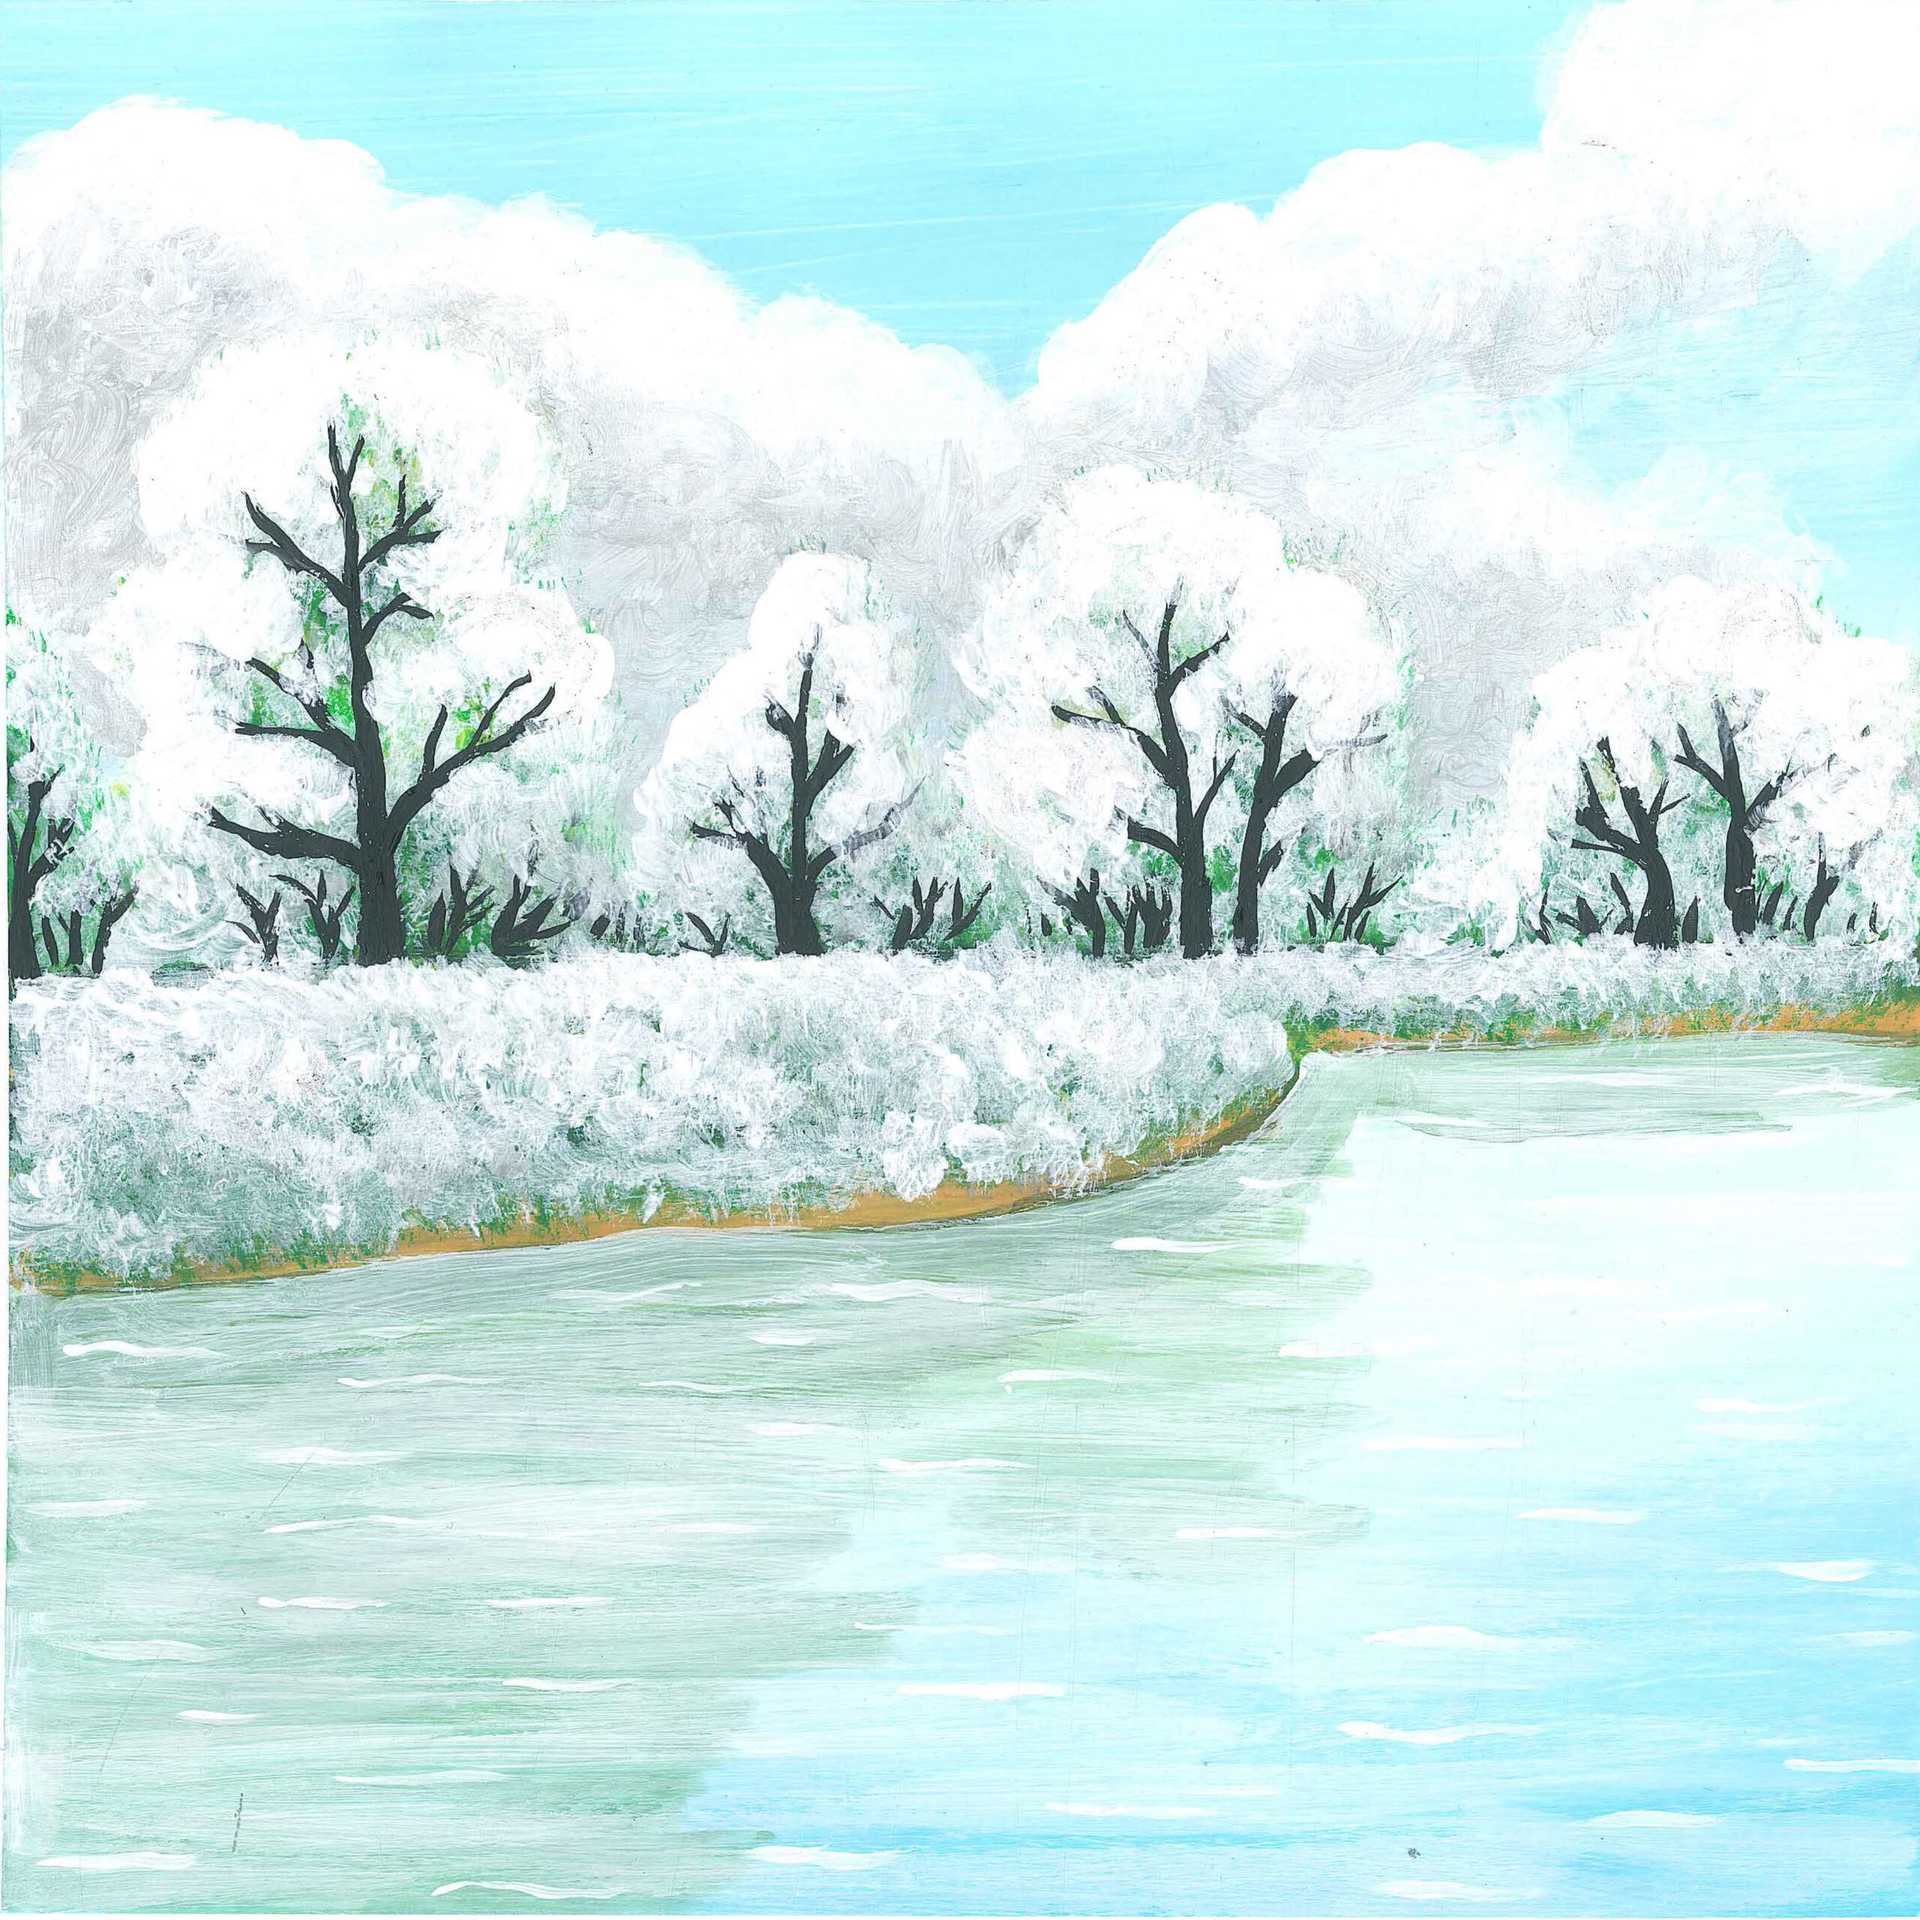 Winter on the Warta River - nature soundscape - earth.fm